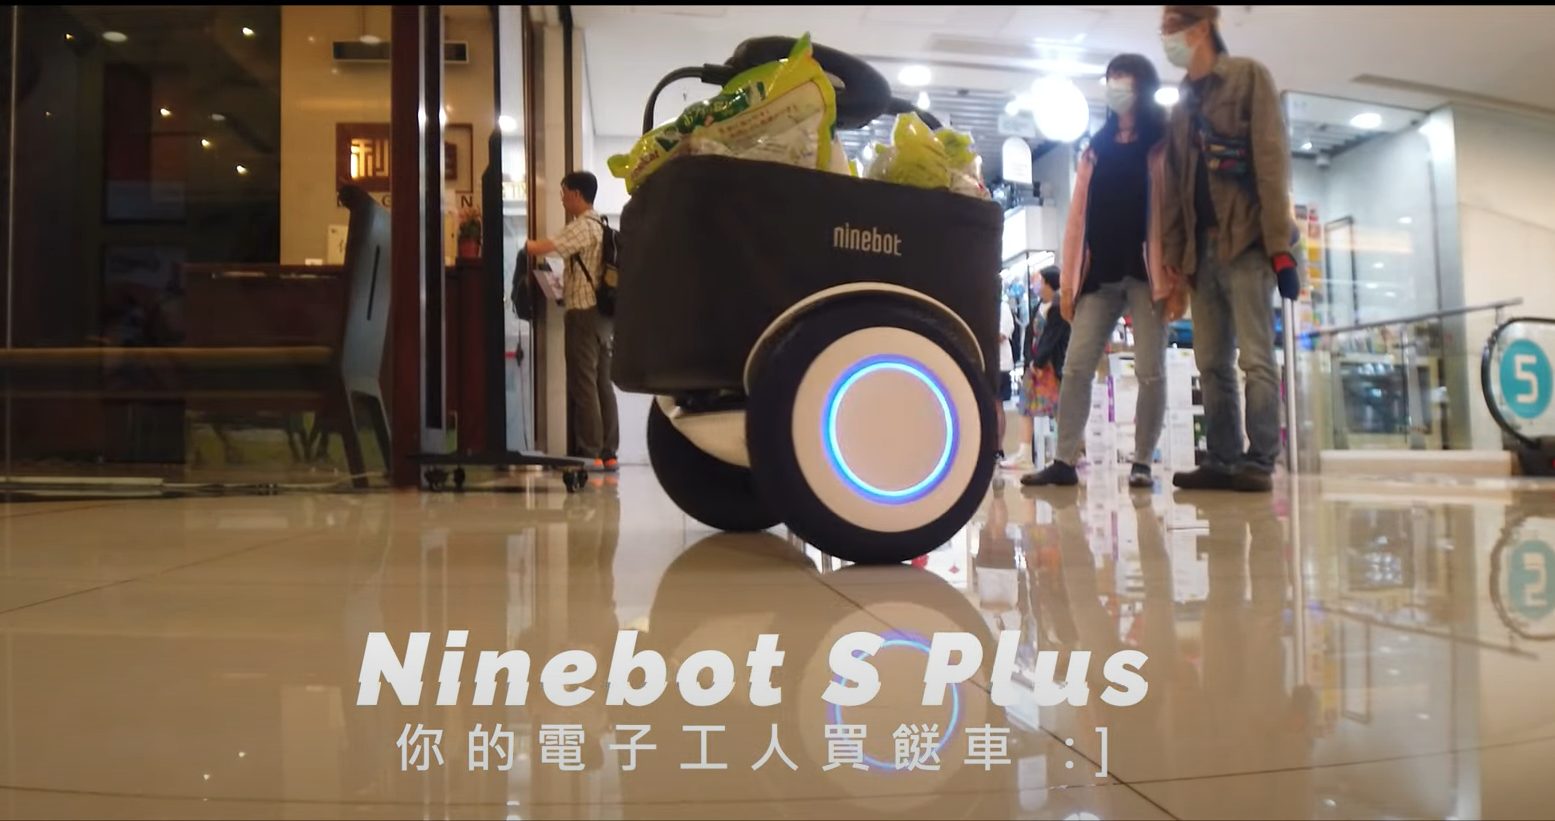 城市探險的最佳夥伴，體驗Ninebot S Plus電動滑板車的前沿功能